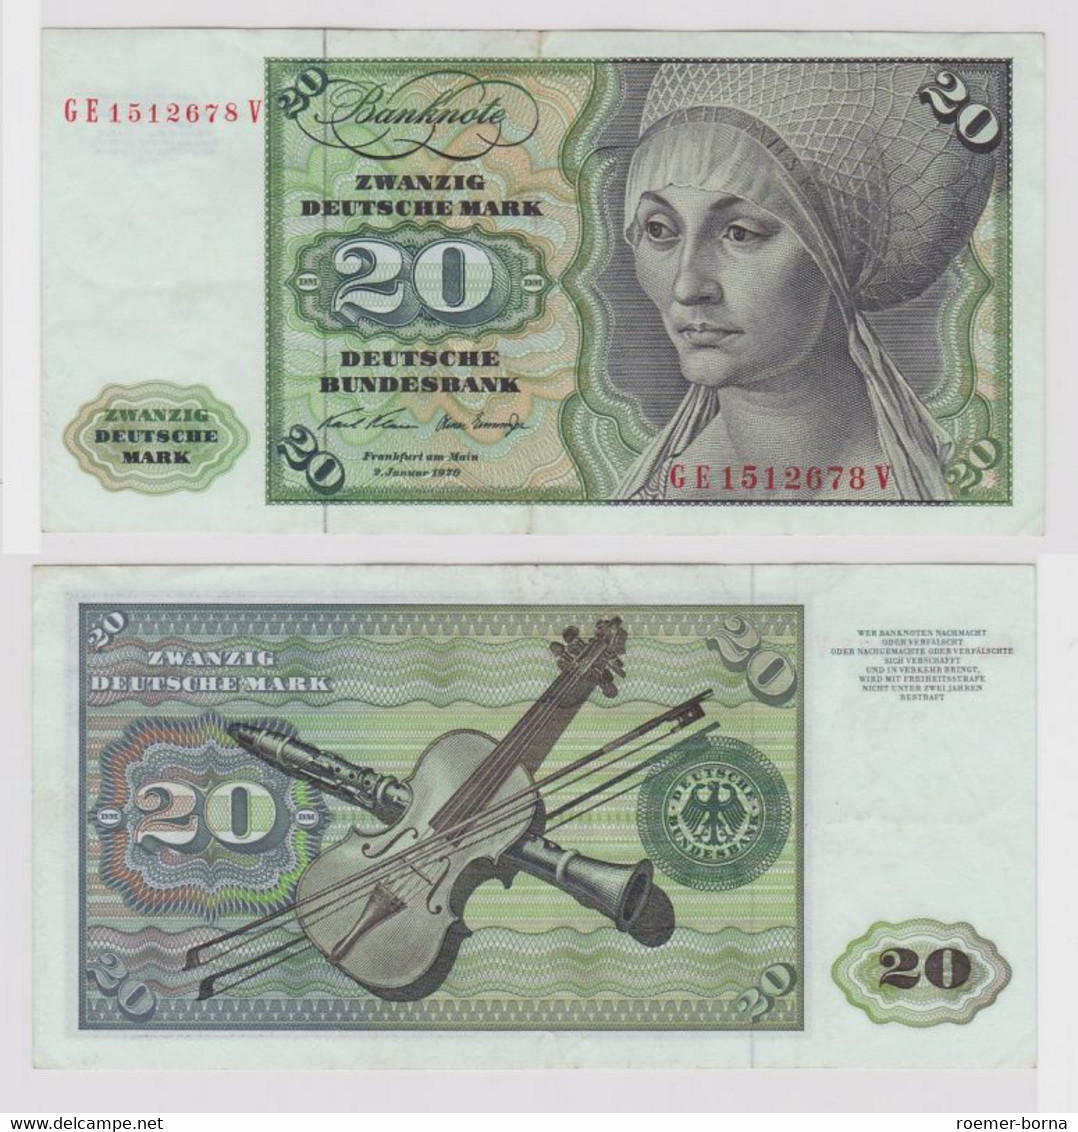 T148707 Banknote 20 DM Deutsche Mark Ro. 271b Schein 2.Jan. 1970 KN GE 1512678 V - 20 DM